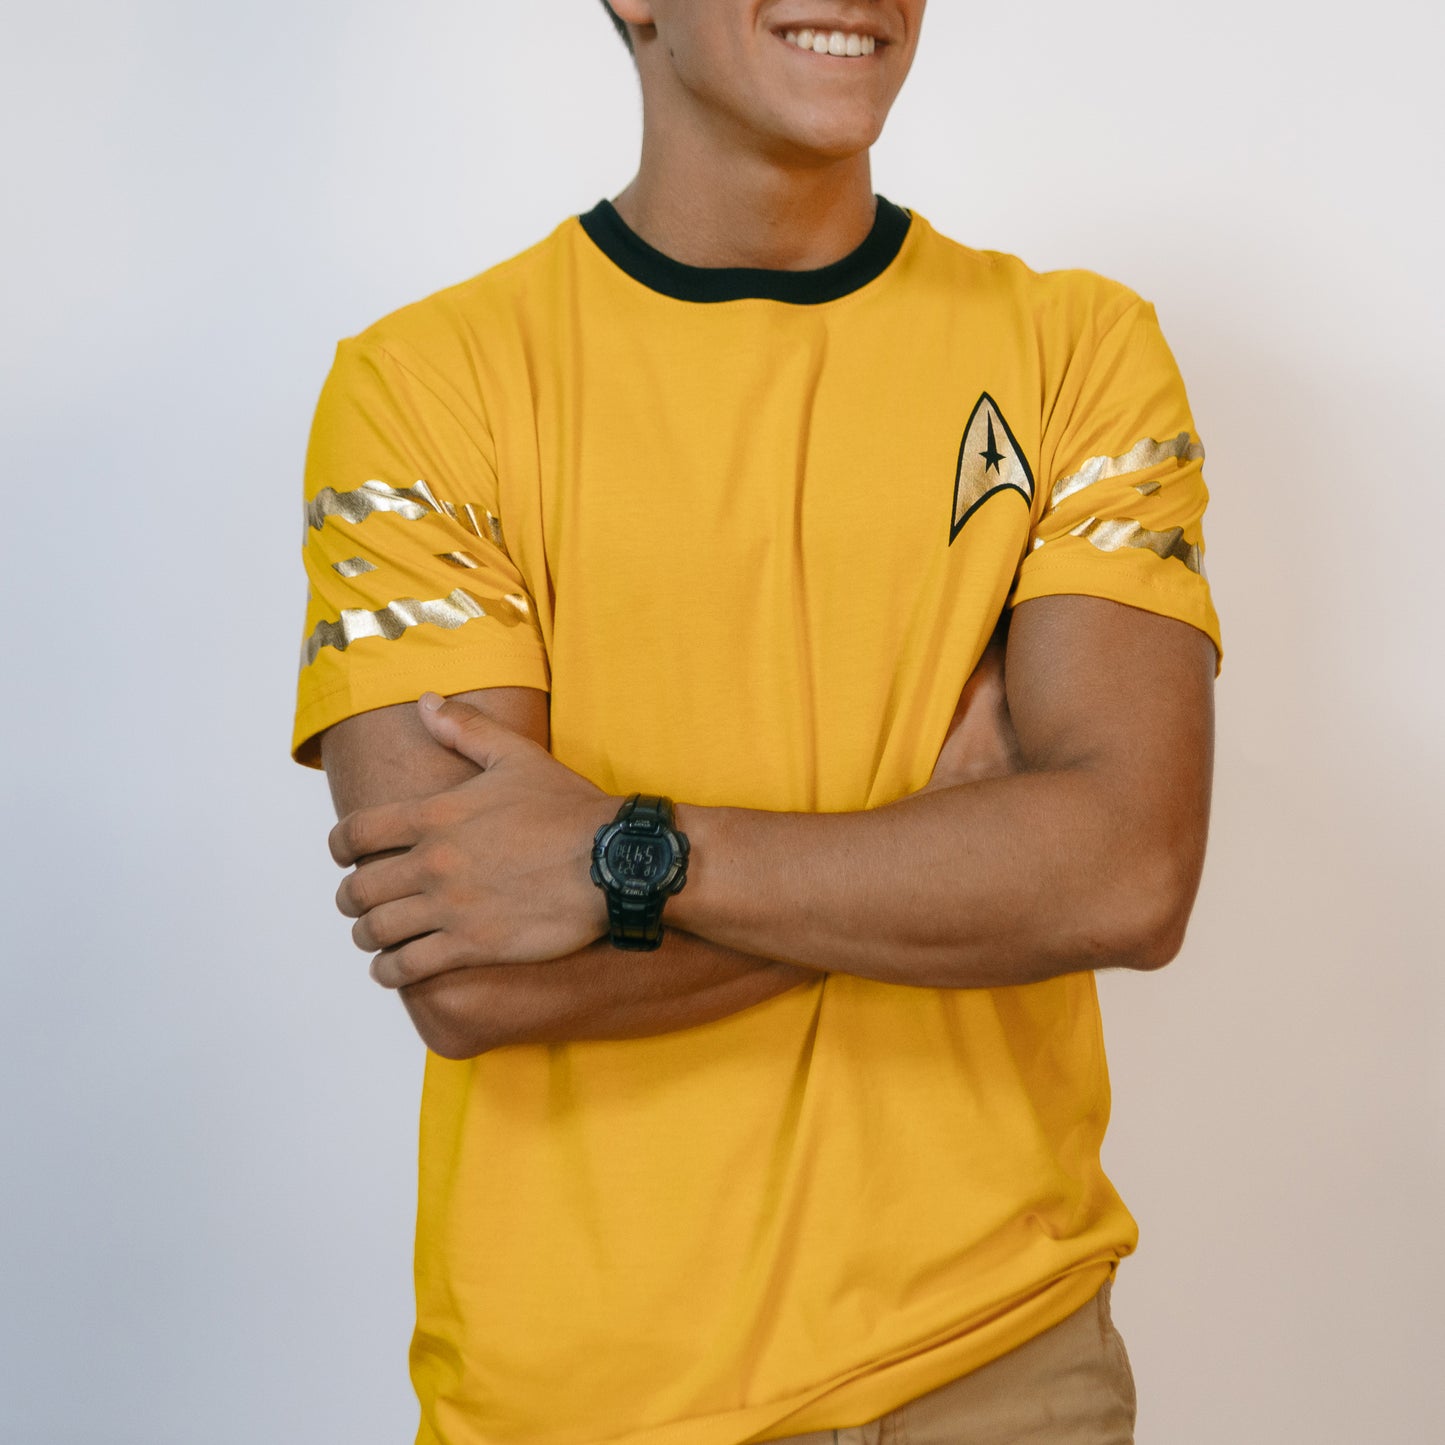 Star Trek: The Original Series Camiseta de uniforme de mando